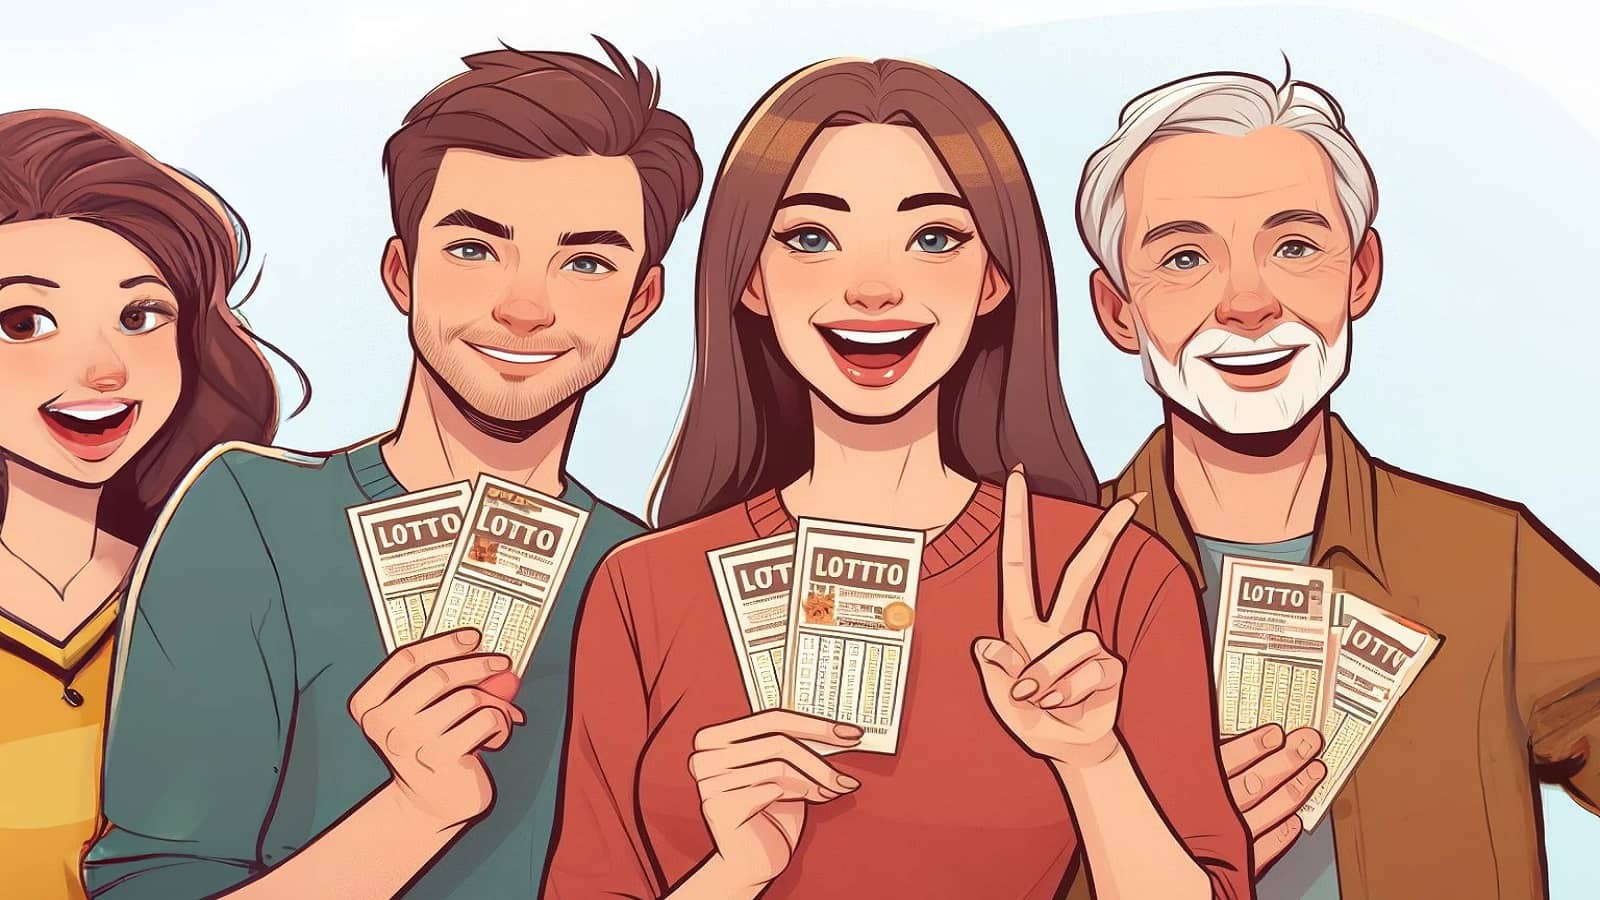 rysunek czwórki graczy lotto prezentujących swoje zakłady Lotto